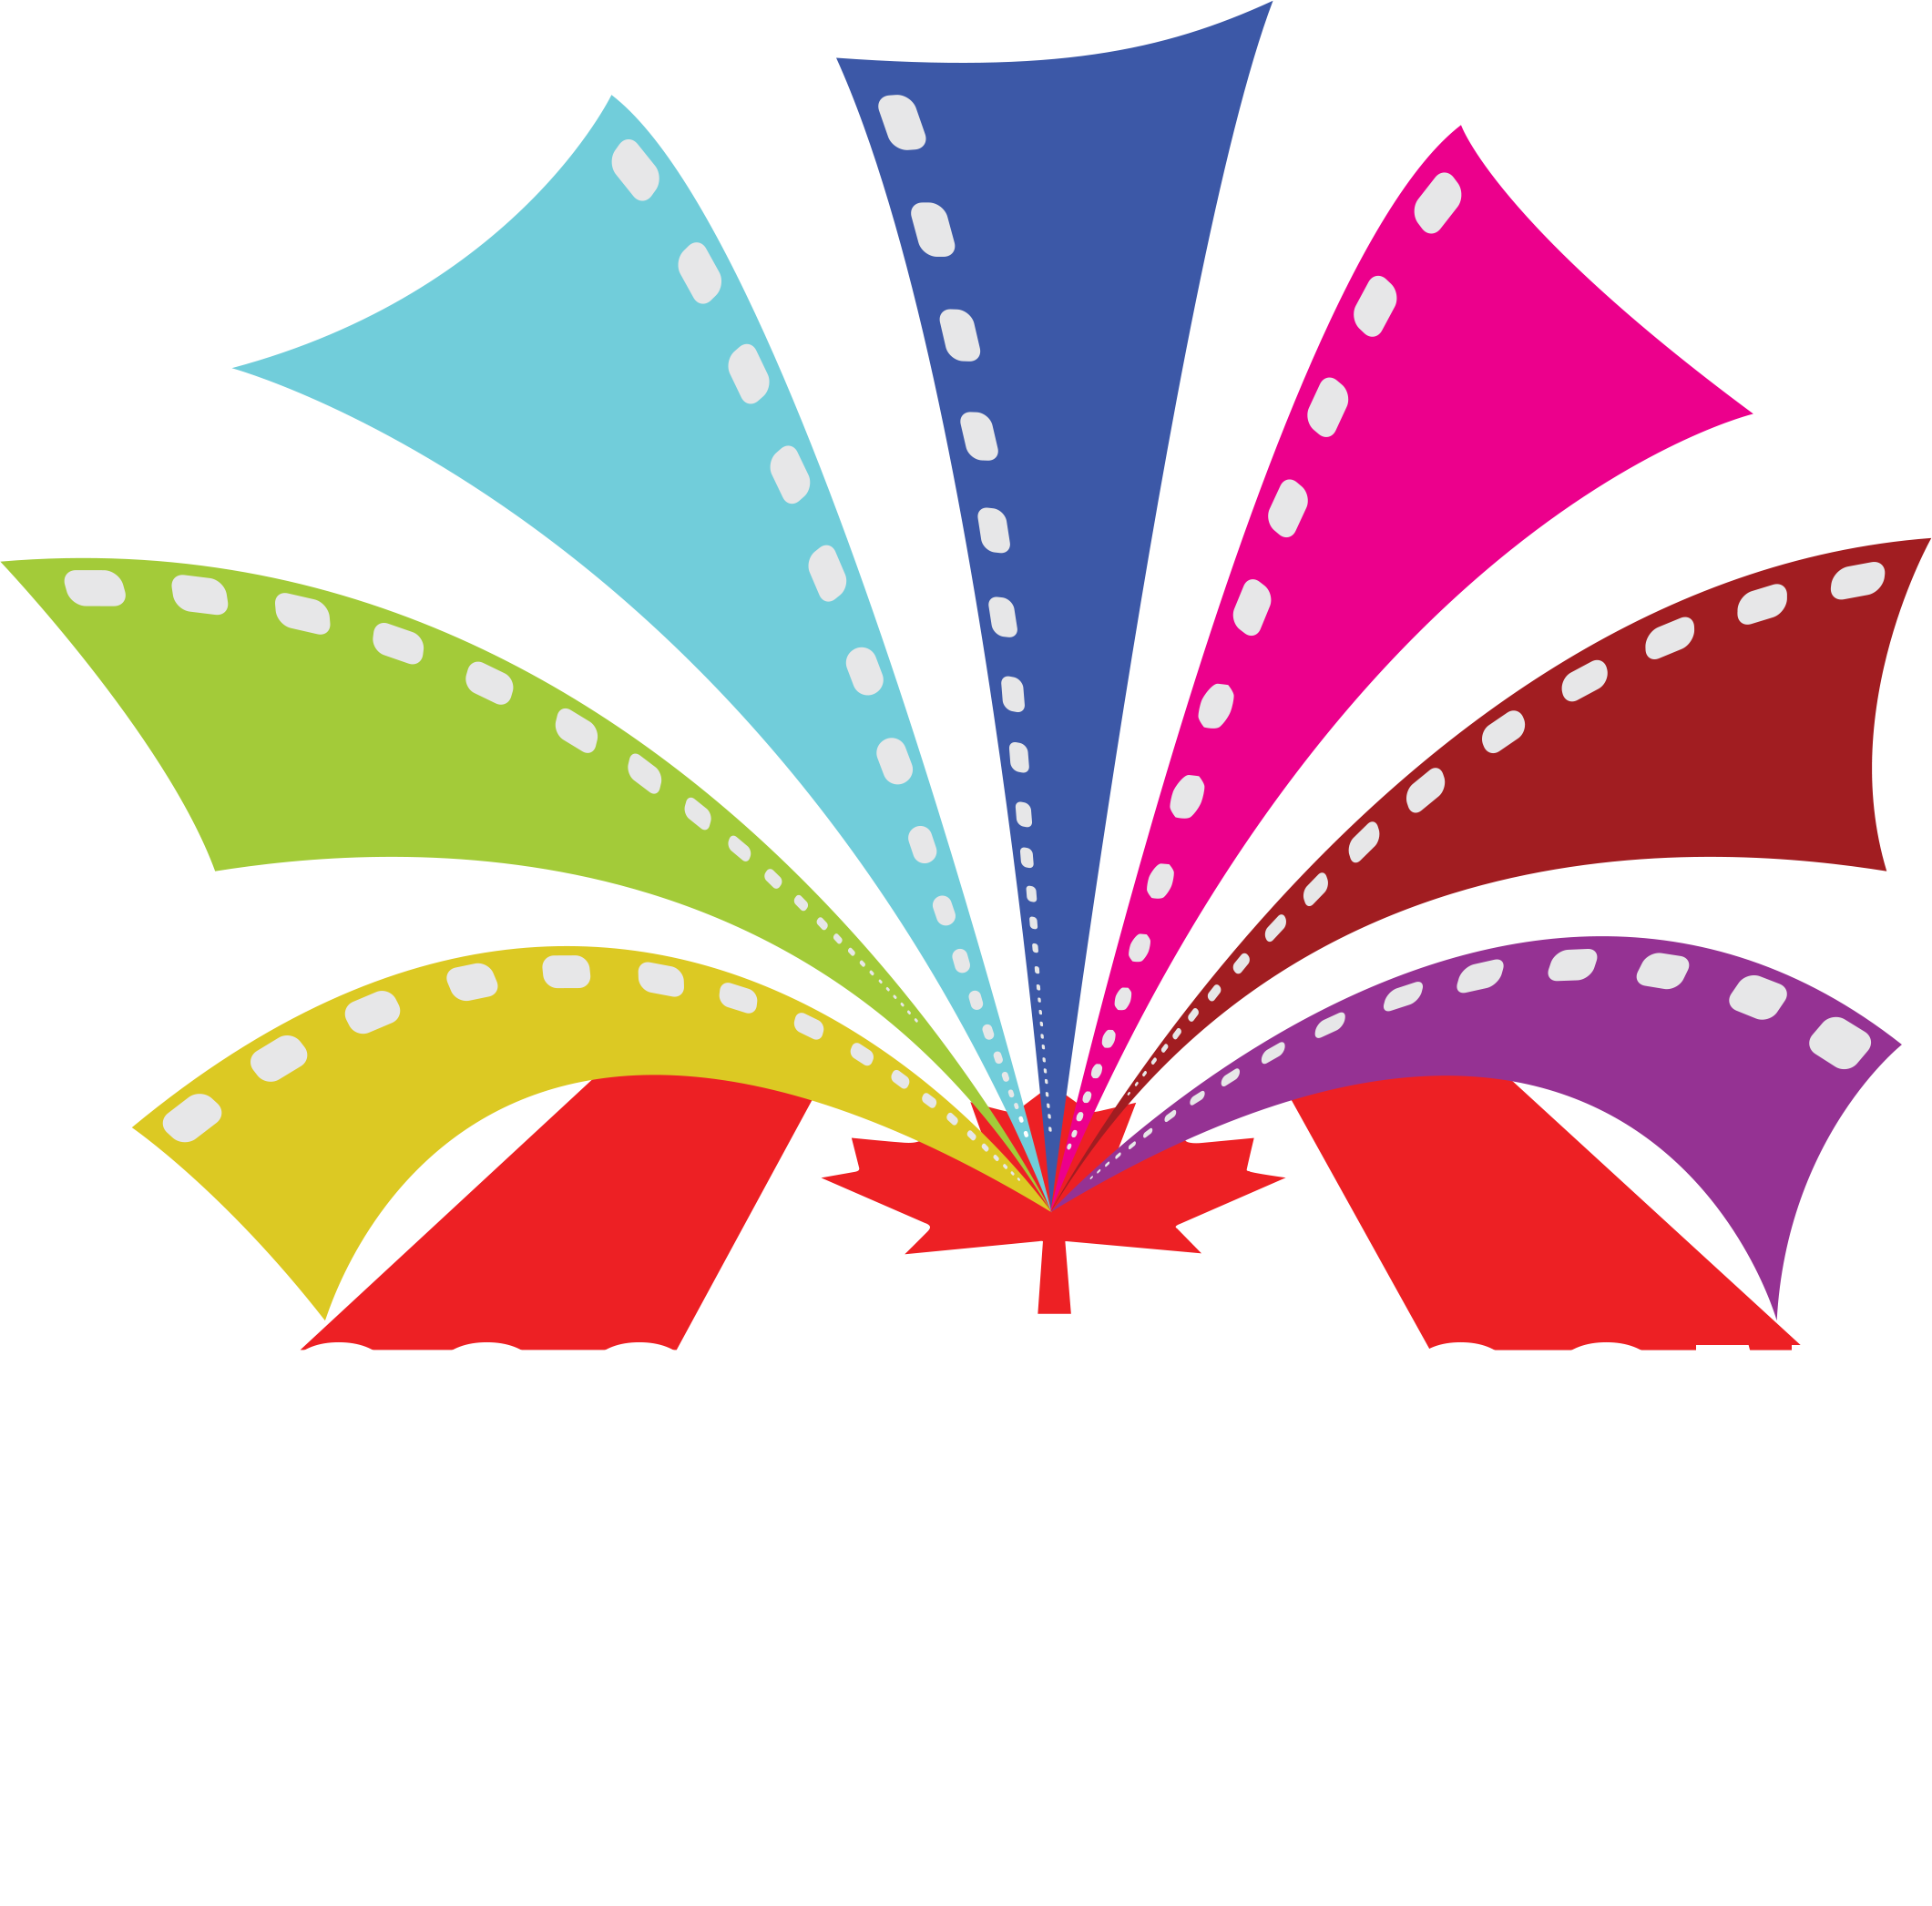 Hudson Film Festival